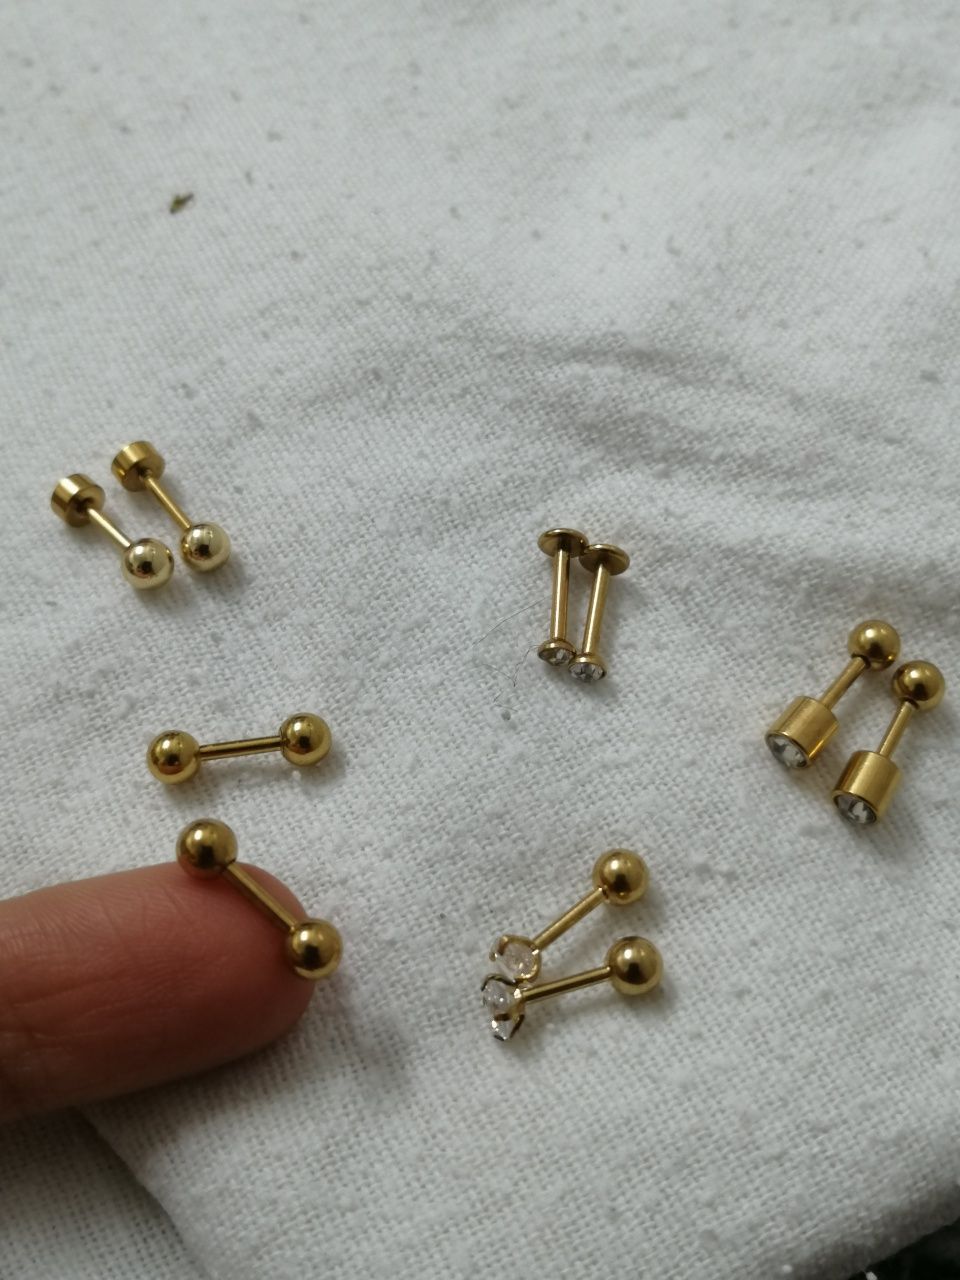 Brincos/piercing em aço inoxidável (NOVOS)